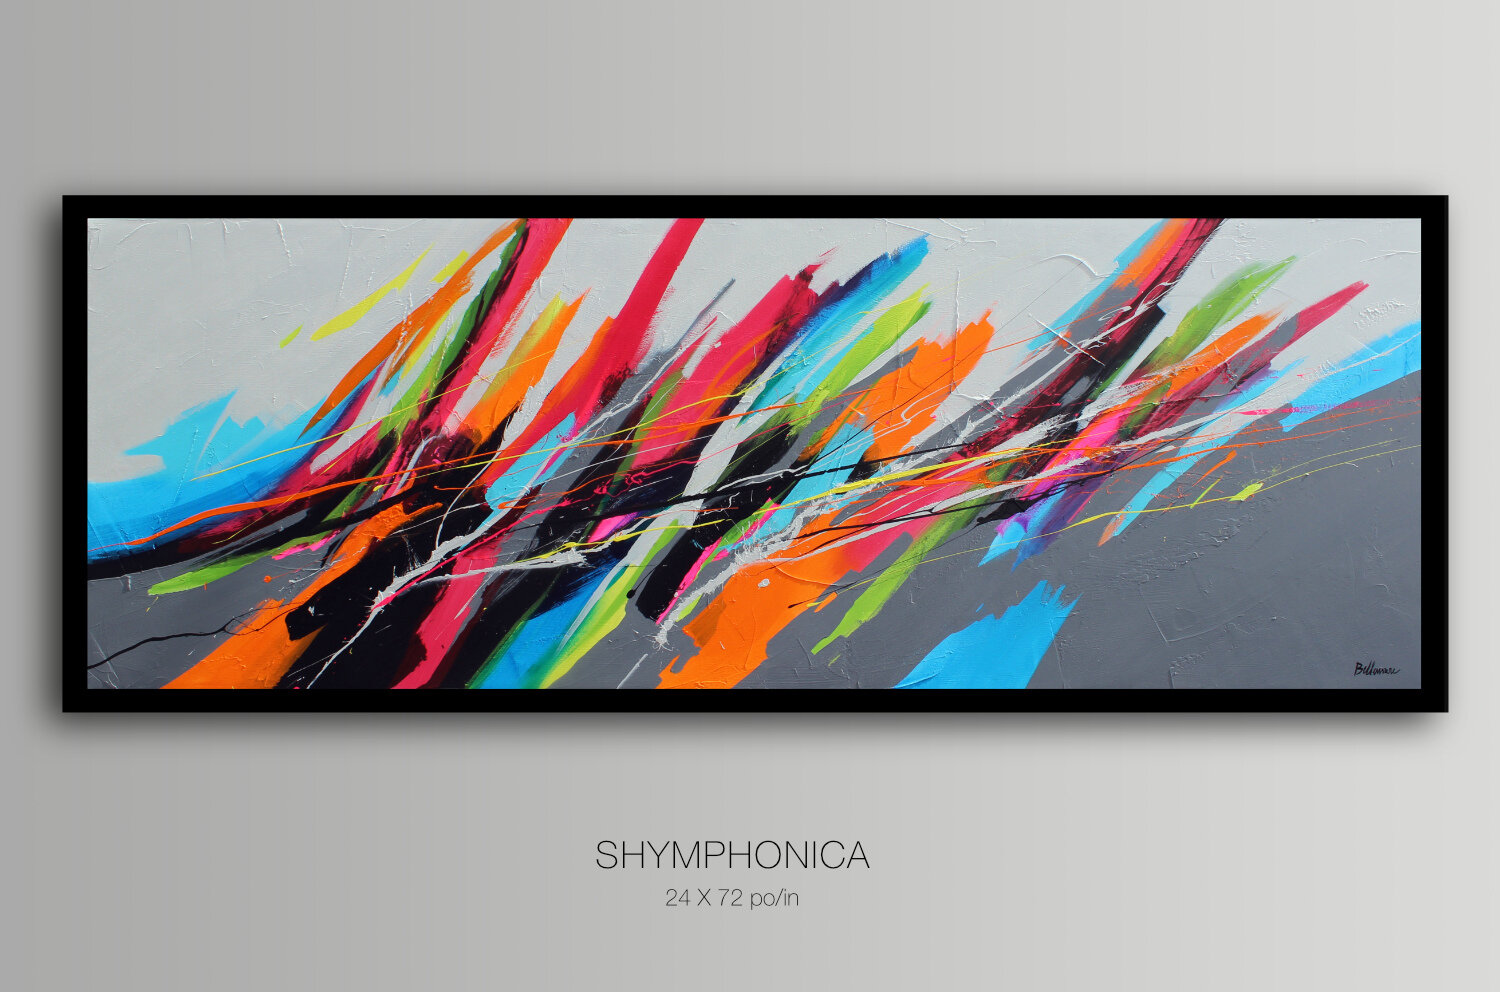 Shymphonica - Rythmik Collection